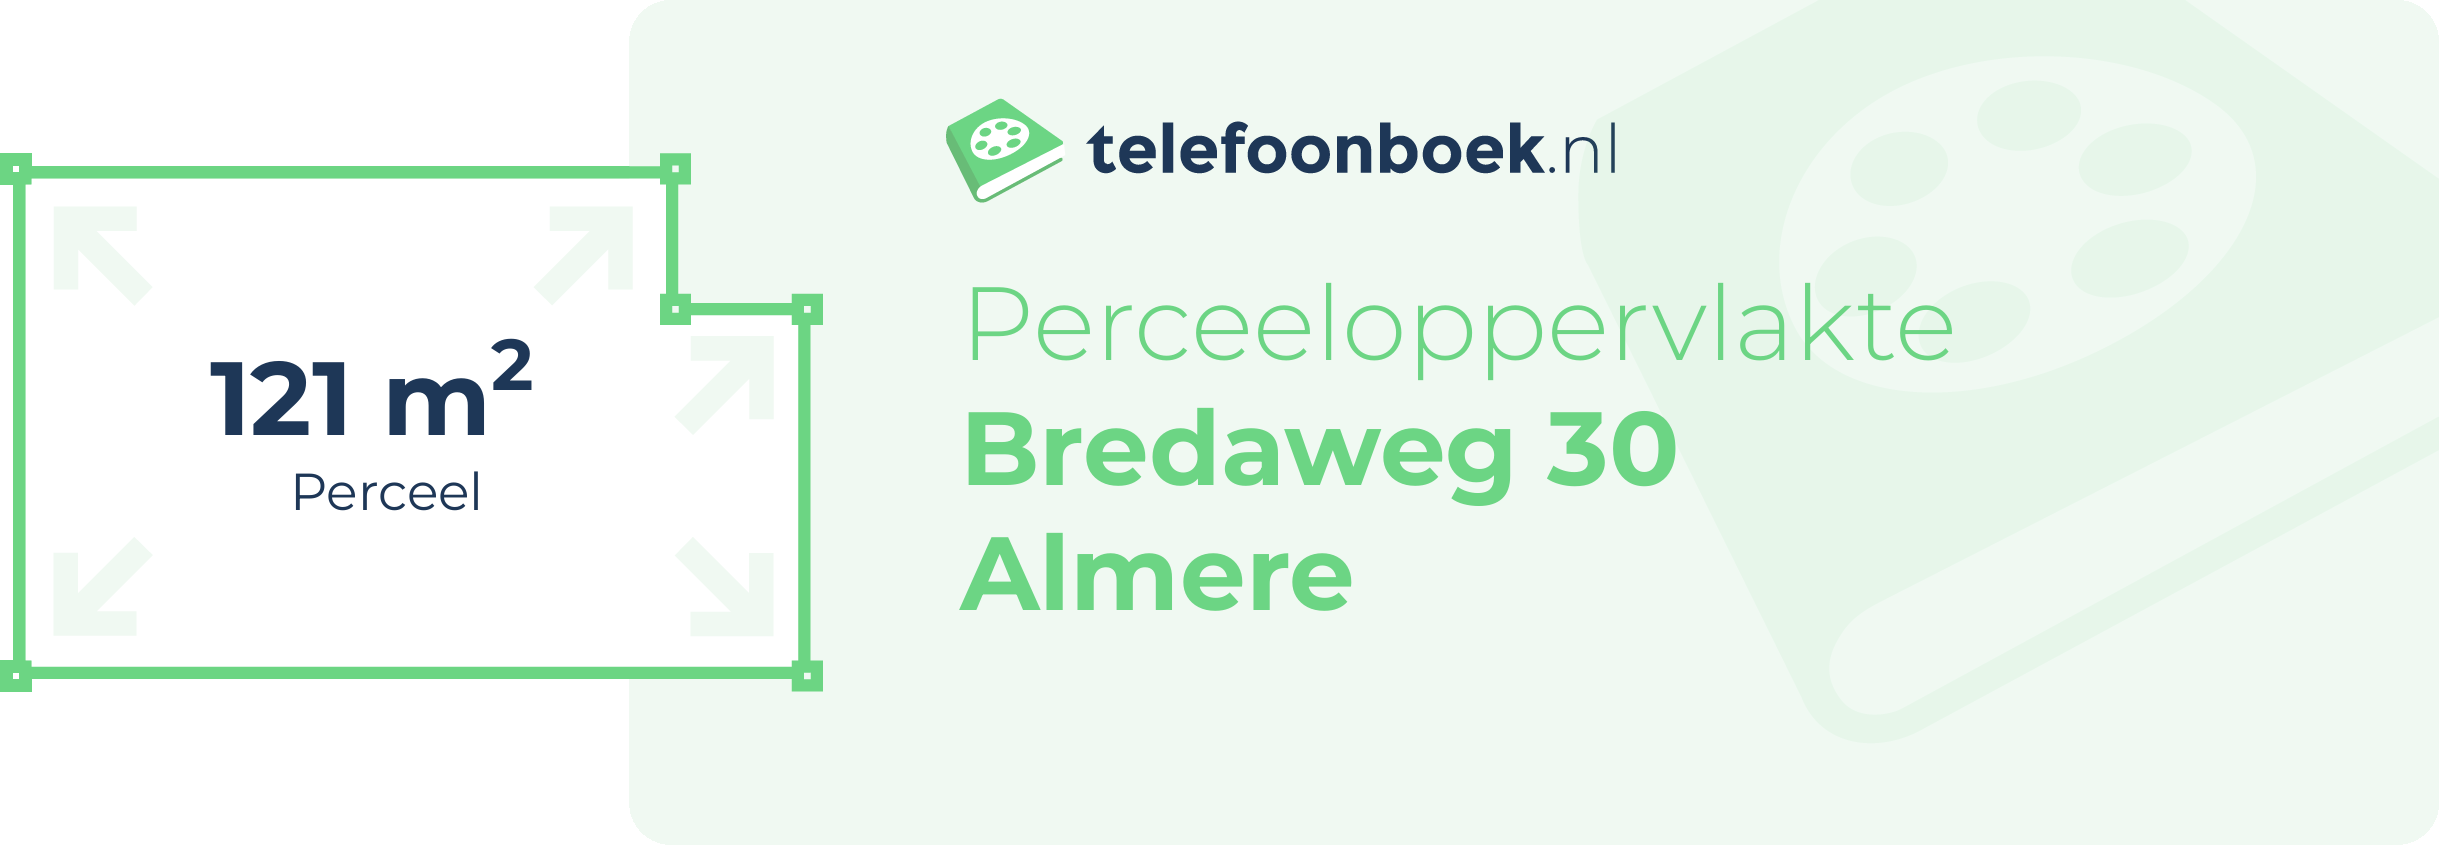 Perceeloppervlakte Bredaweg 30 Almere